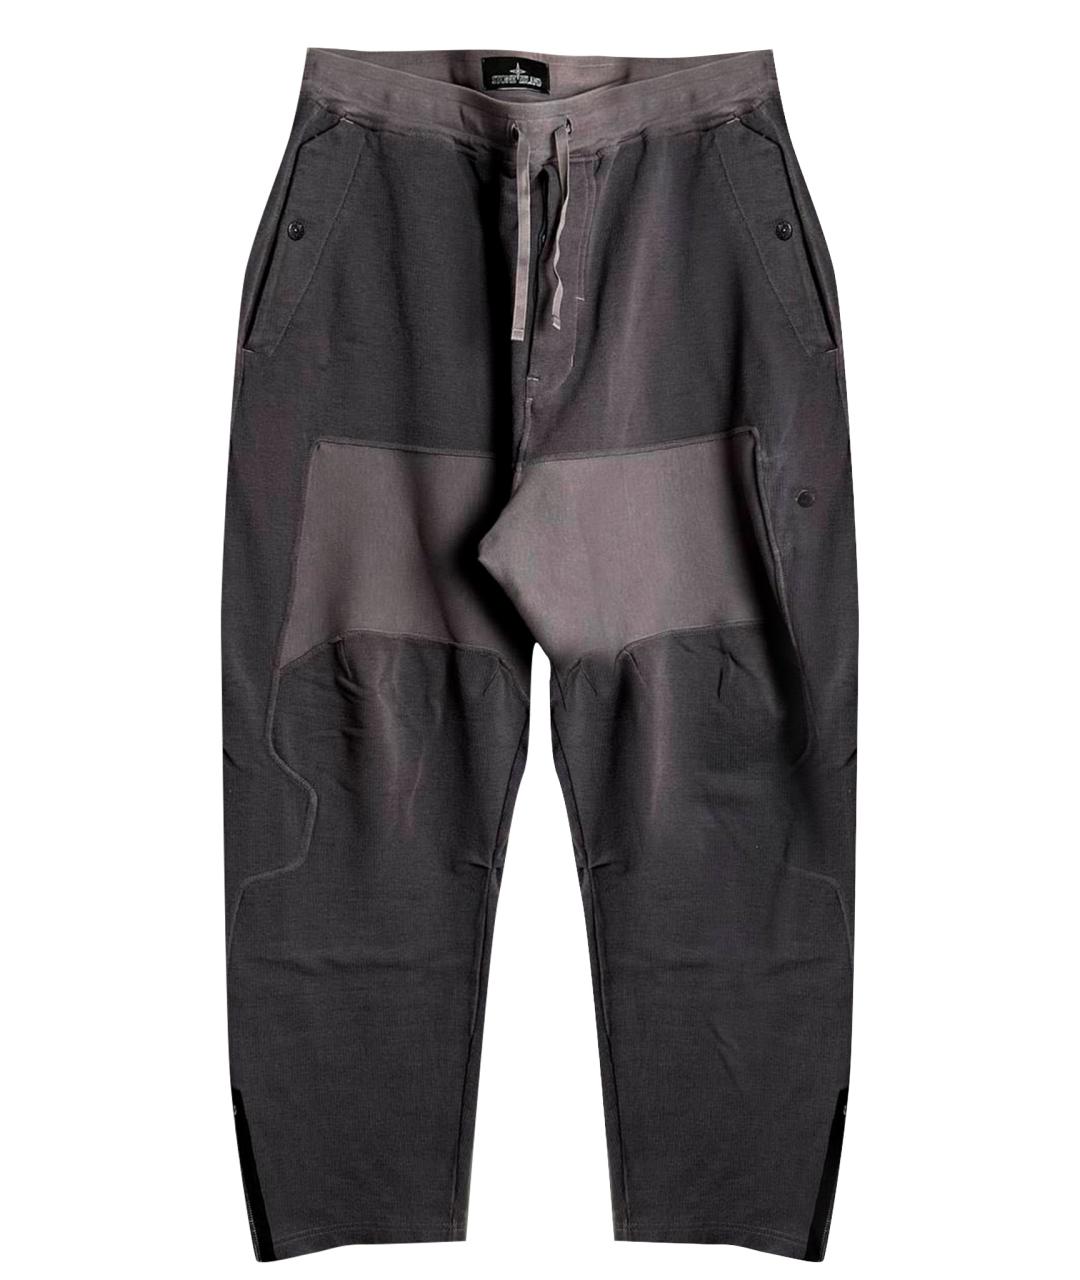 STONE ISLAND SHADOW PROJECT Антрацитовые хлопковые повседневные брюки, фото 1